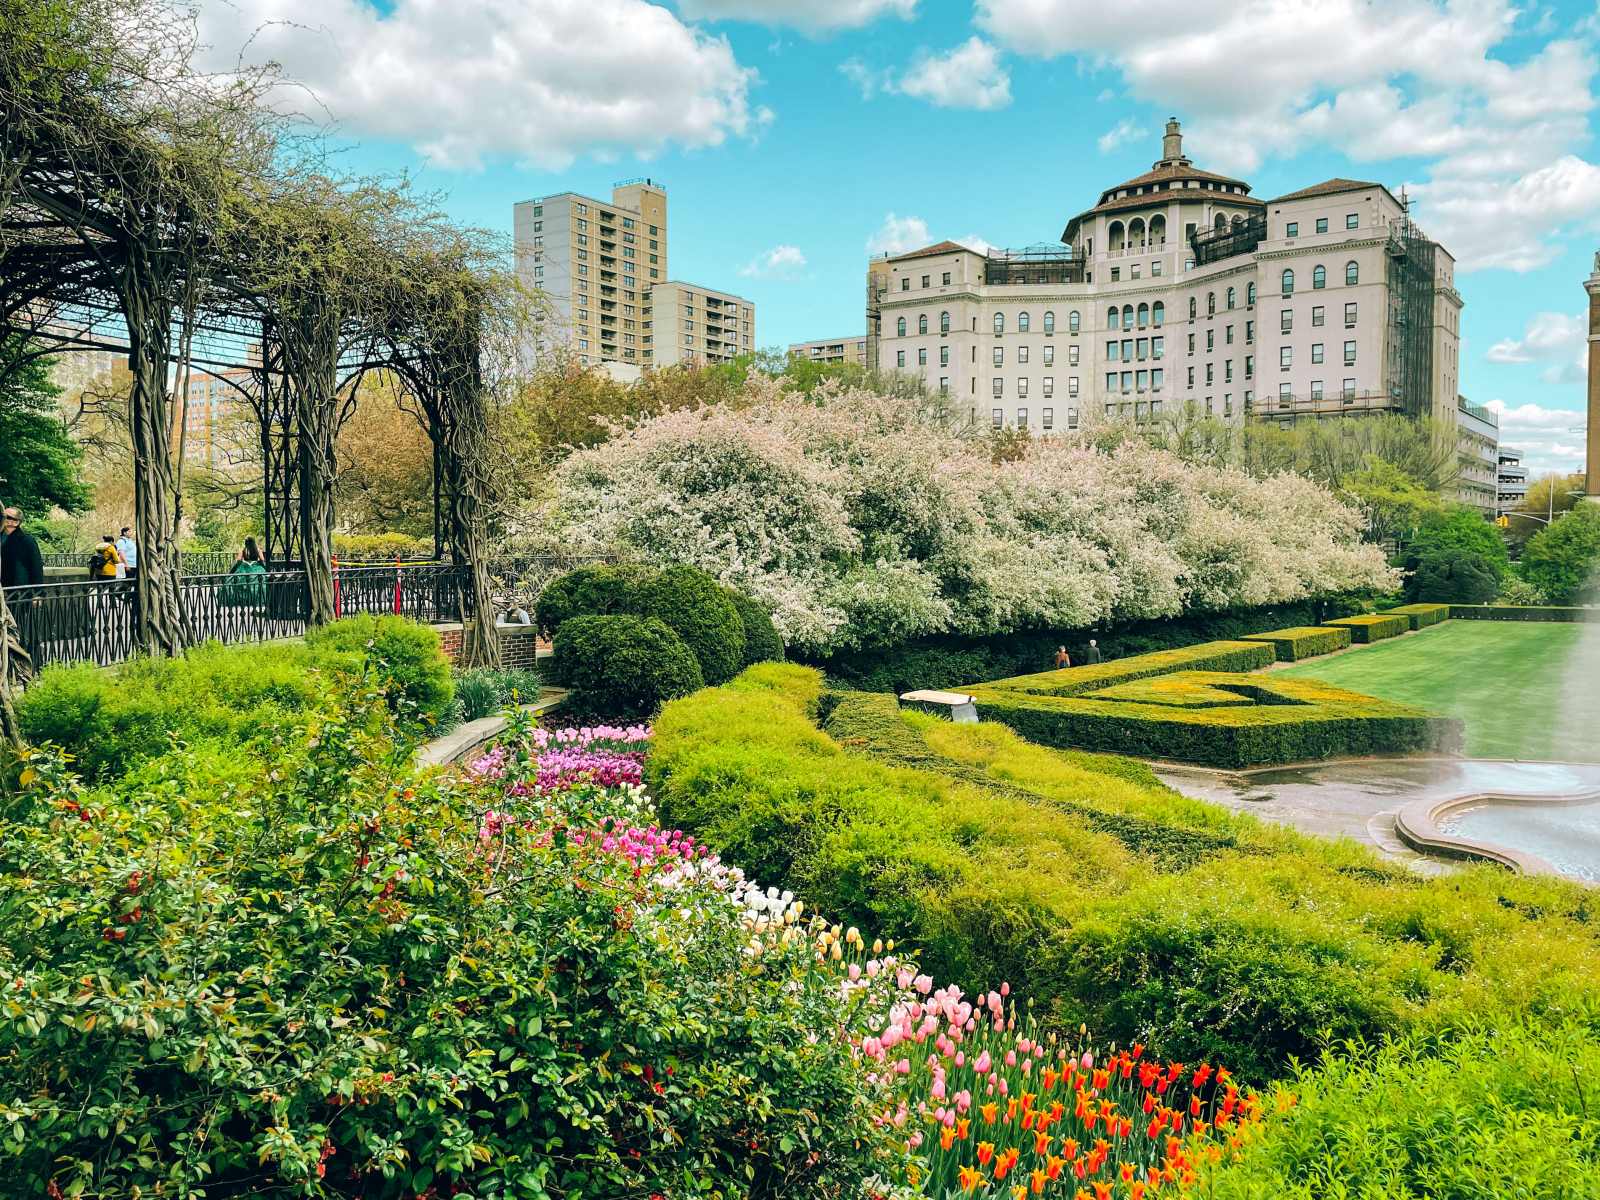 Một góc vườn kiểu Ý - Khu vườn Conservatory - Central Park